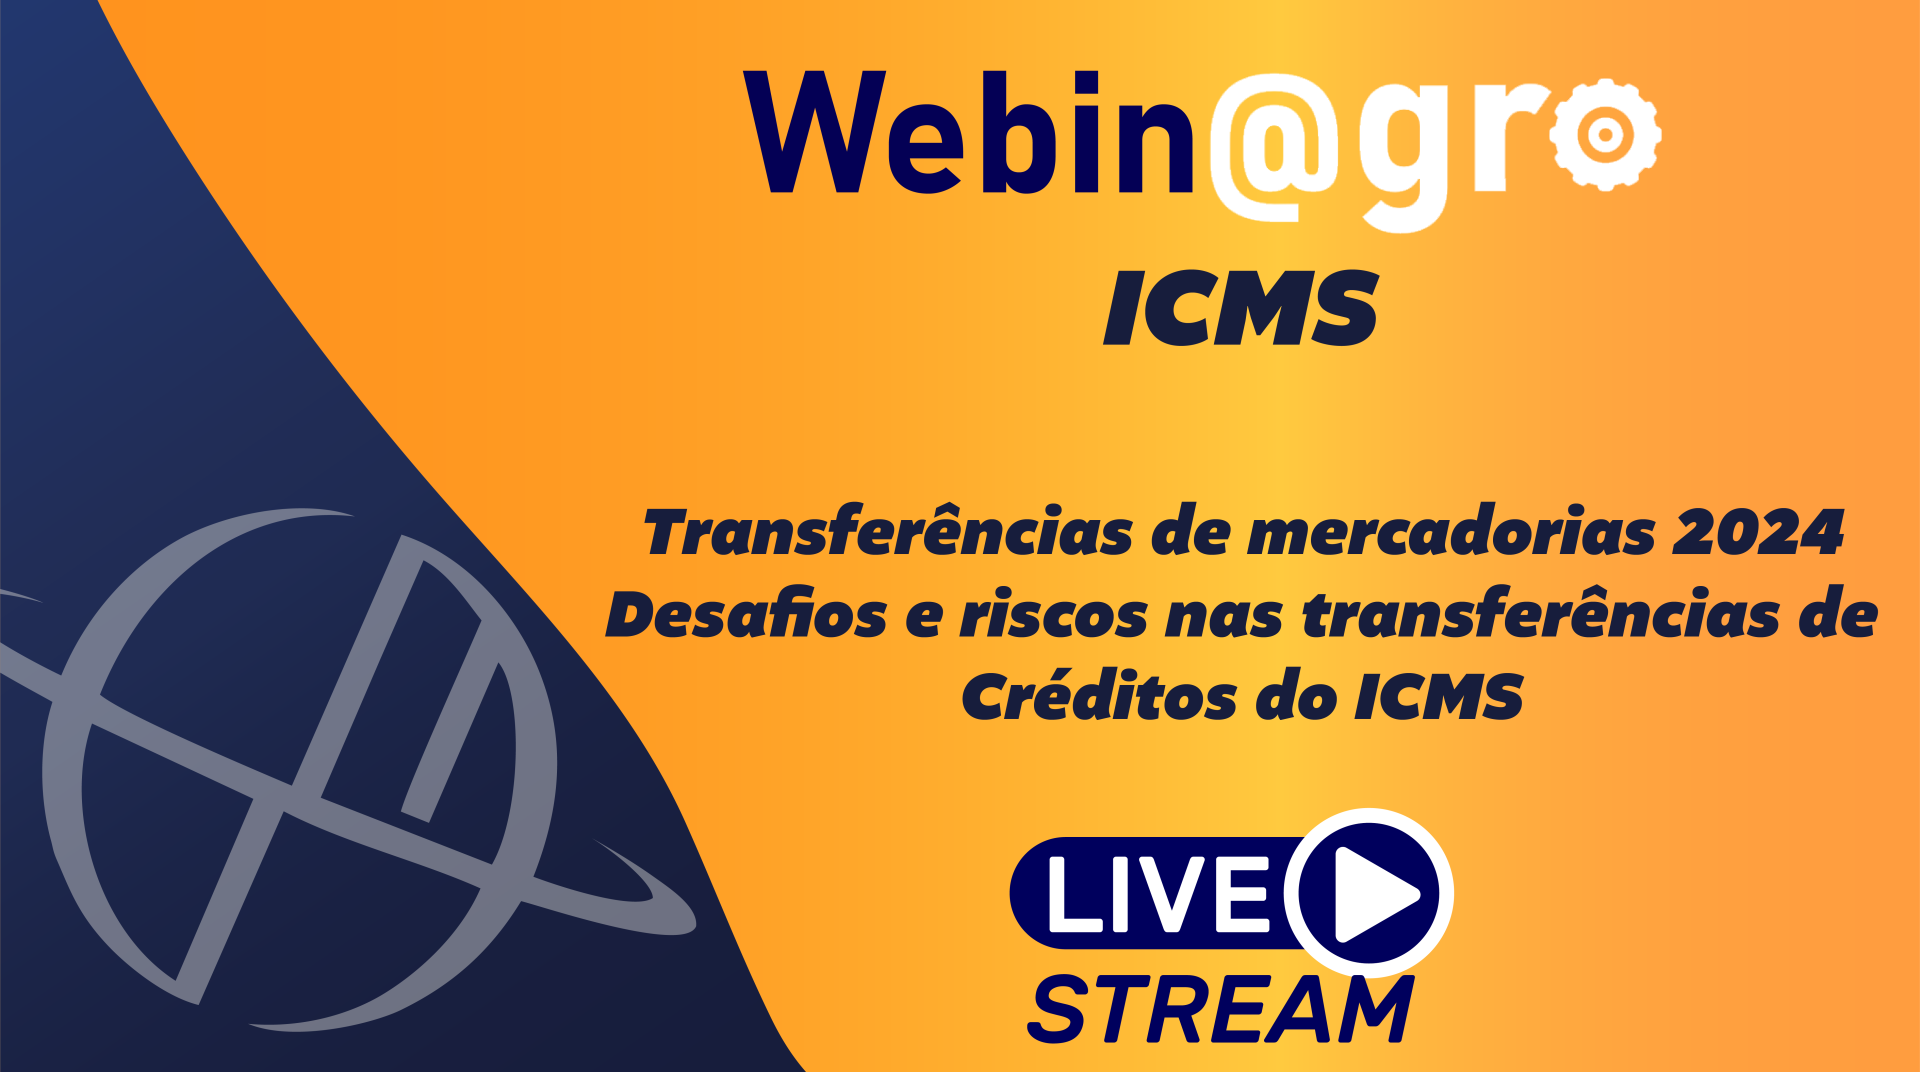 WebinAgro - Transferências de mercadorias: Desafios e riscos nas transferências de créditos do ICMS